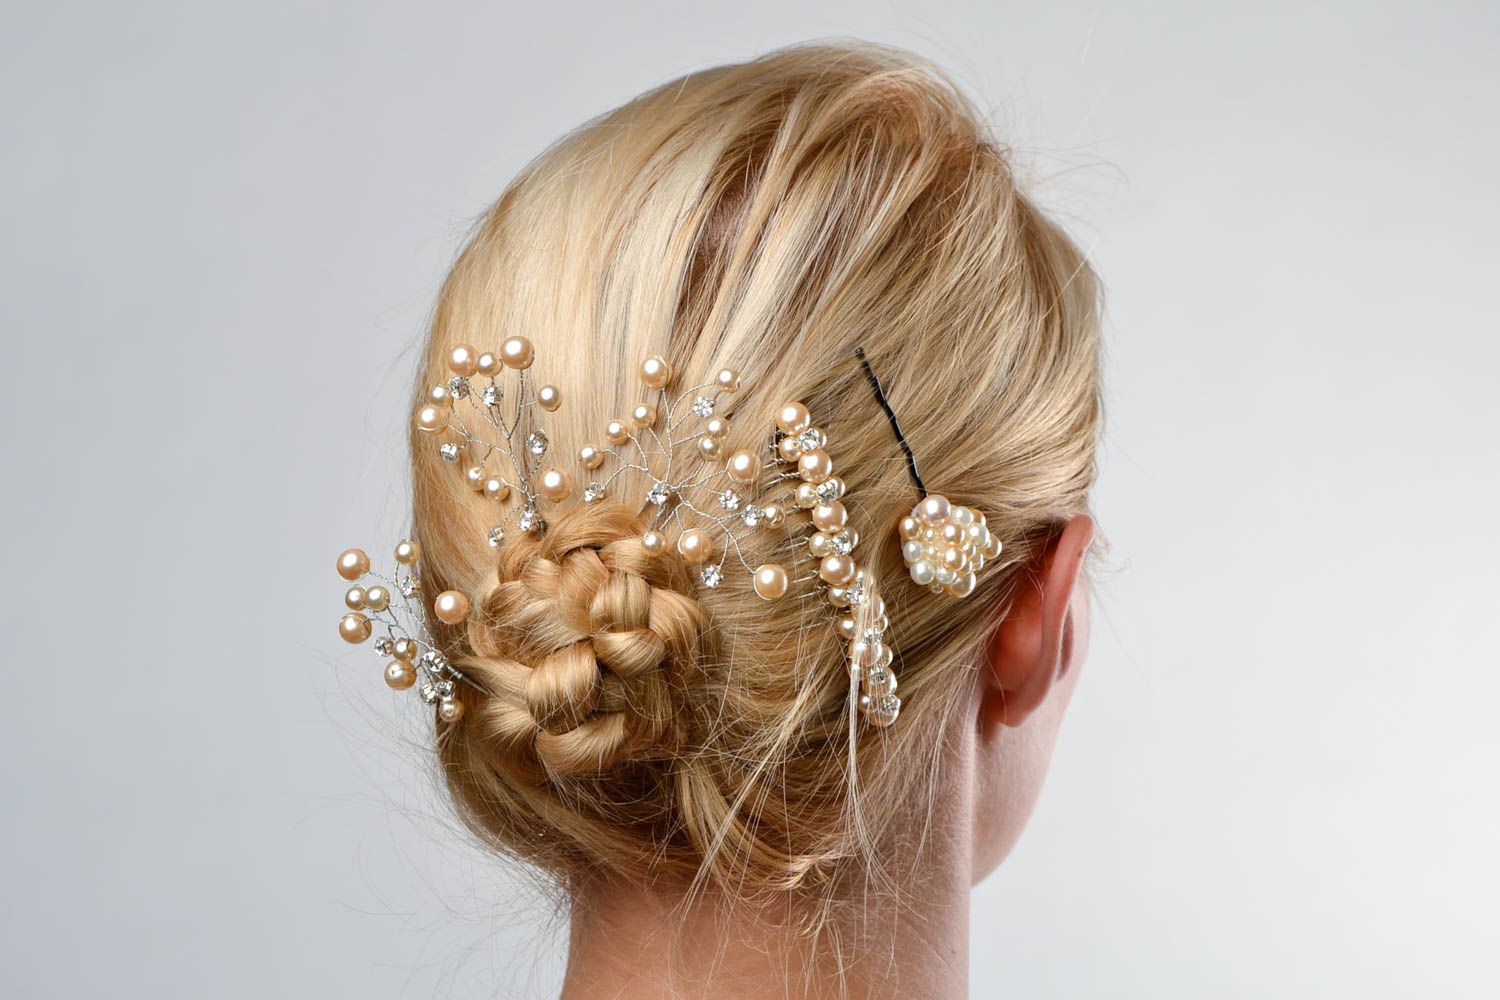 Handmade hair clip beautiful wedding accessories gift ideas hair clip photo 1